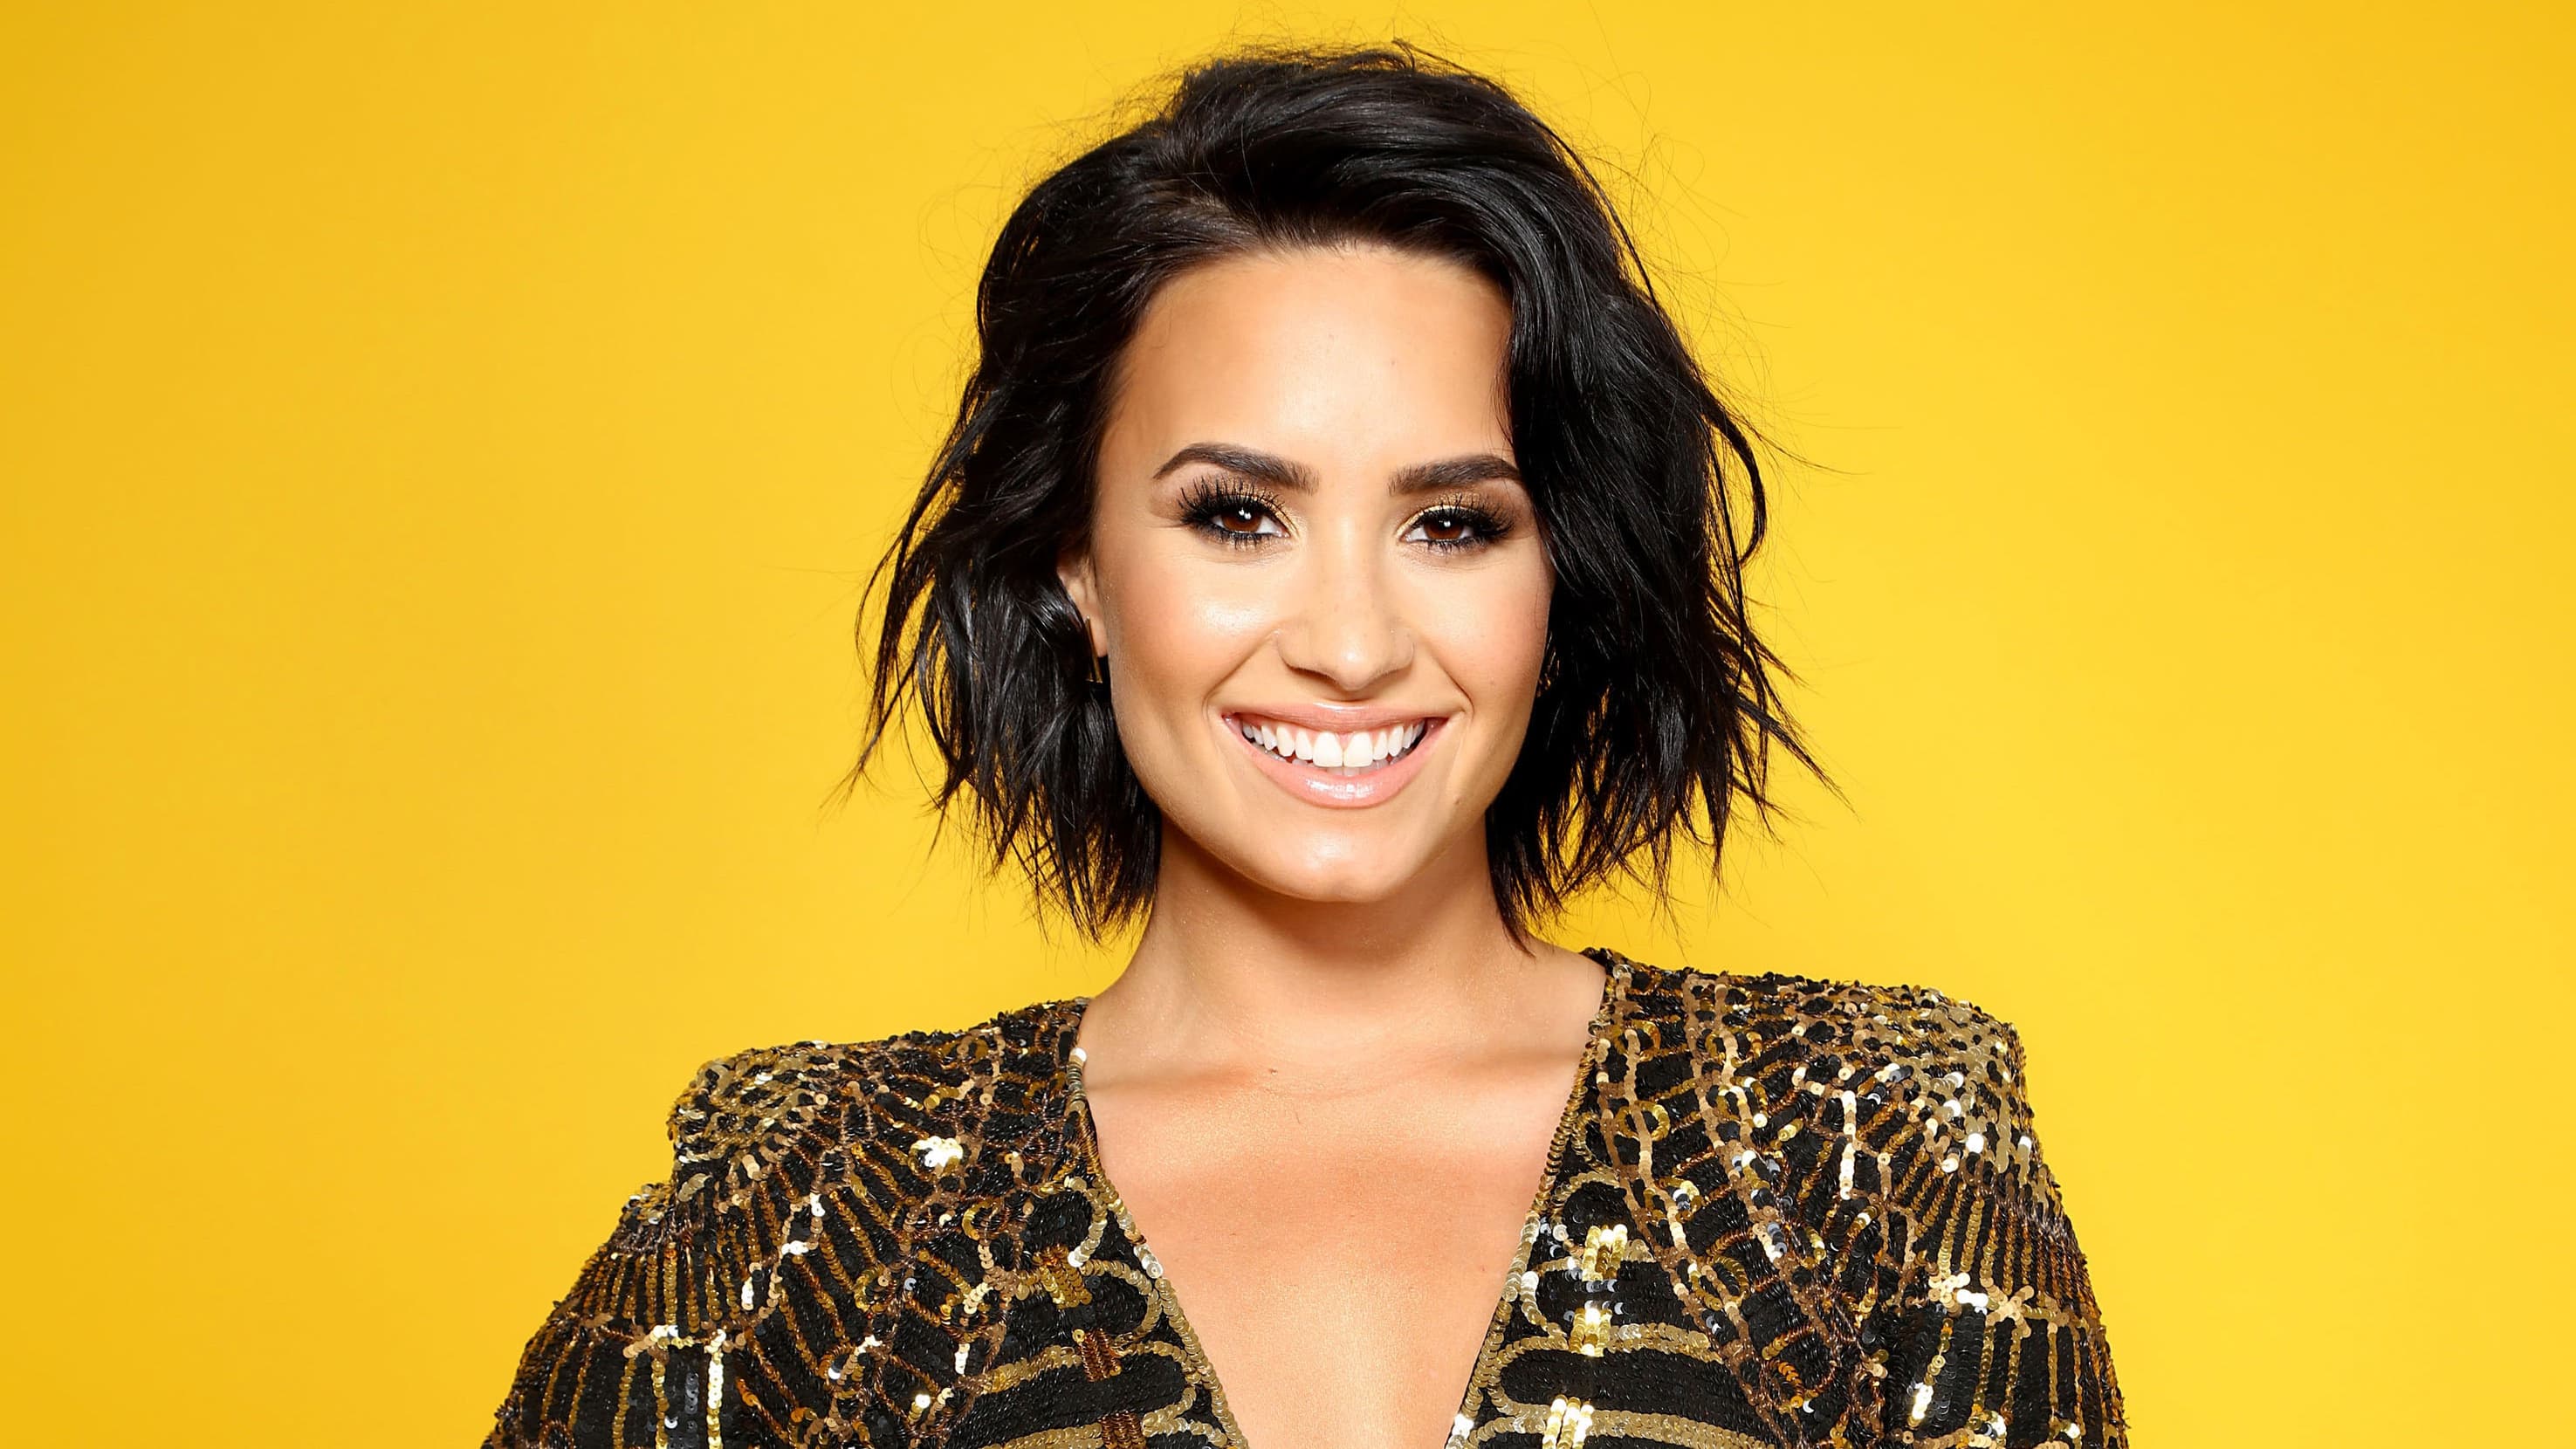 Demi Lovato 2018 Wallpapers Wallpaper Cave